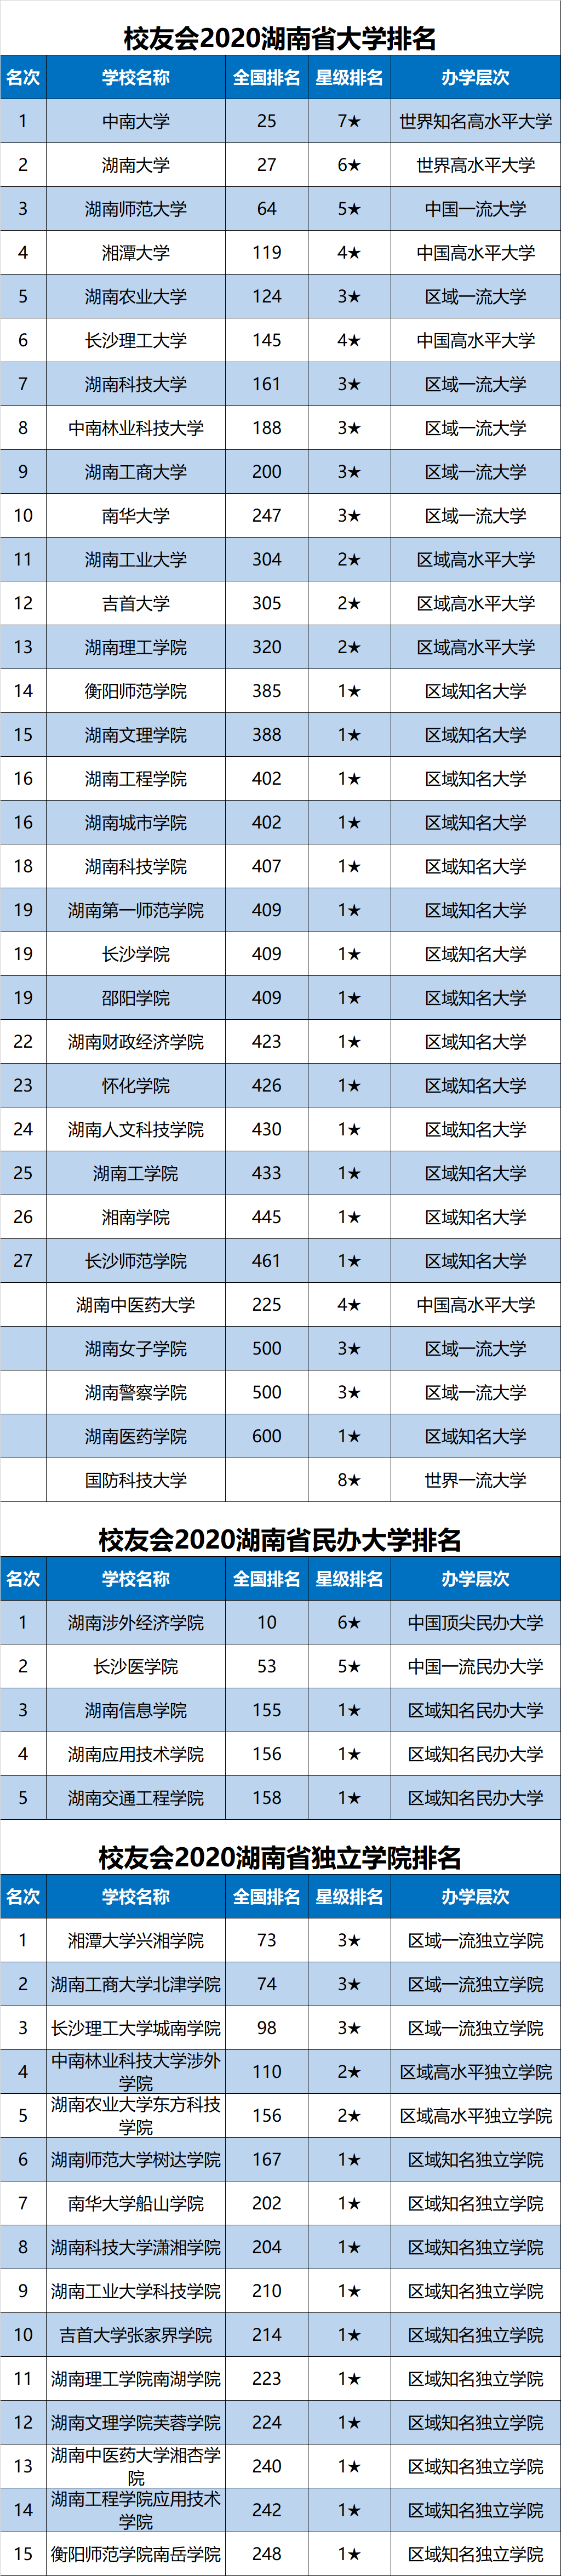 湖南2020高考排名位_2020湖南省高校排行榜,榜首毋庸置疑,第四名始料未及